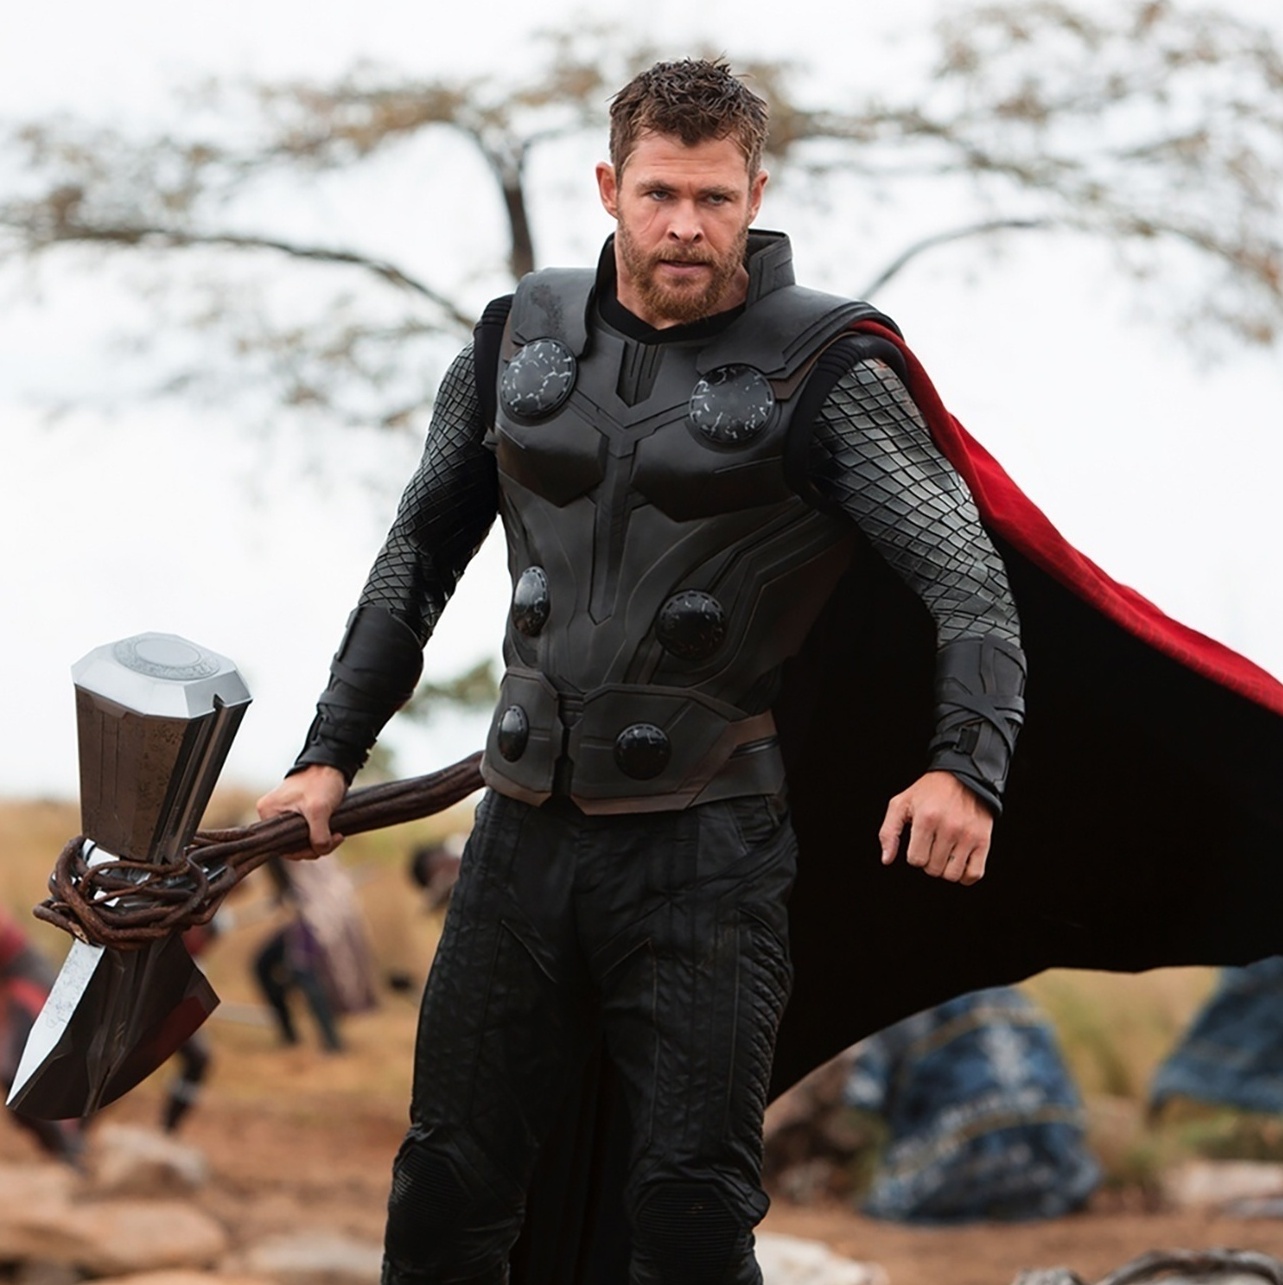 Ator que interpreta Thor nos filmes da Marvel faz aniversário hoje - HIT  SITE